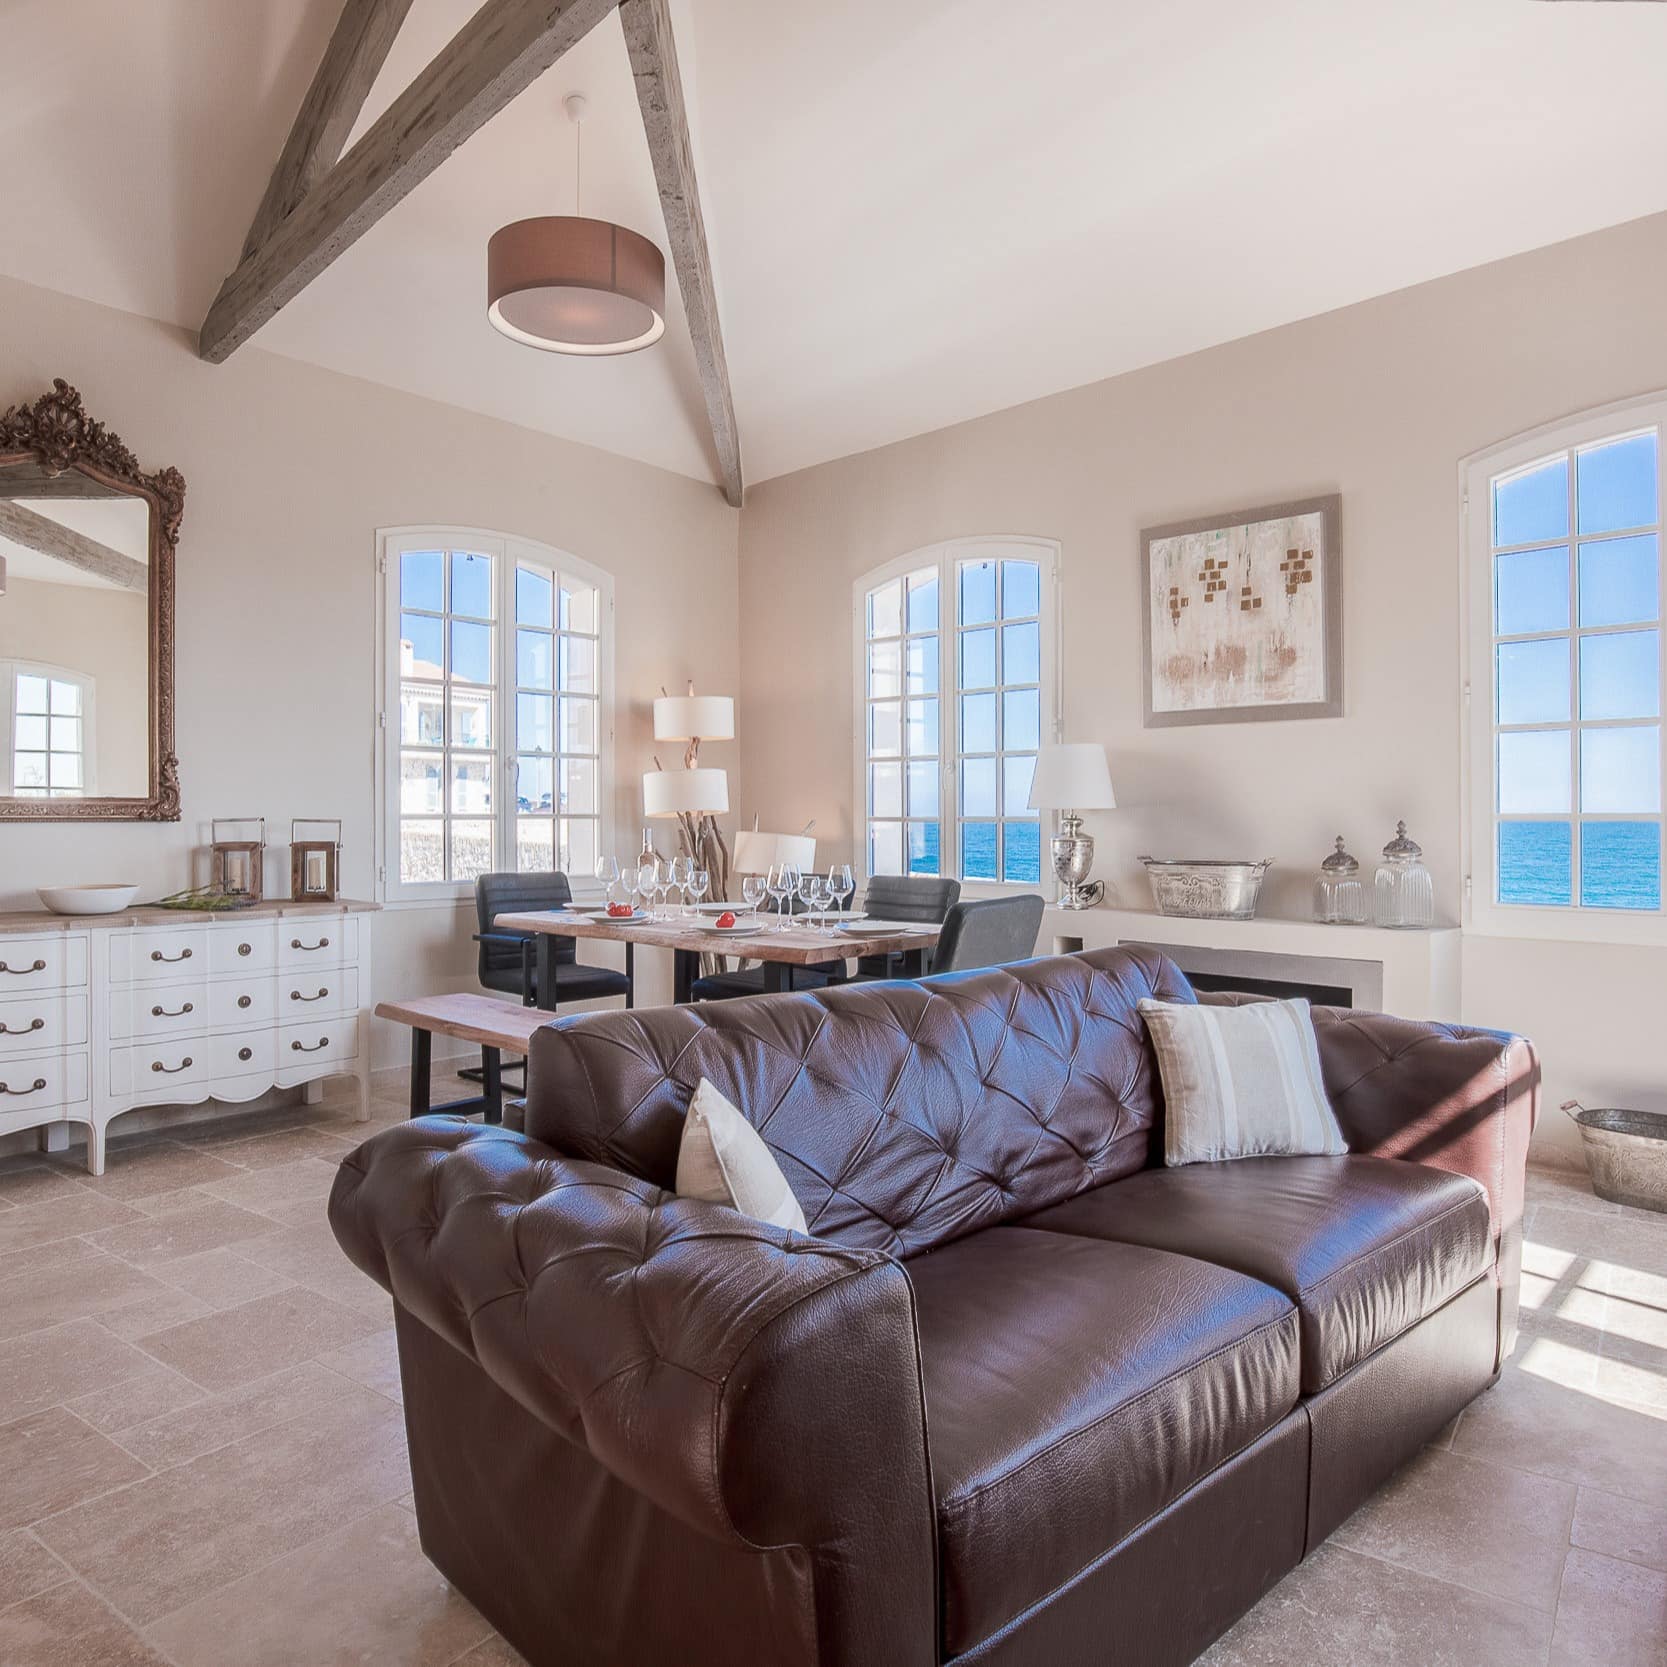 Wohnzimmer mit Meerblick eines Ferienhauses an der Côte d’Azur mit gehobener Ausstattung 